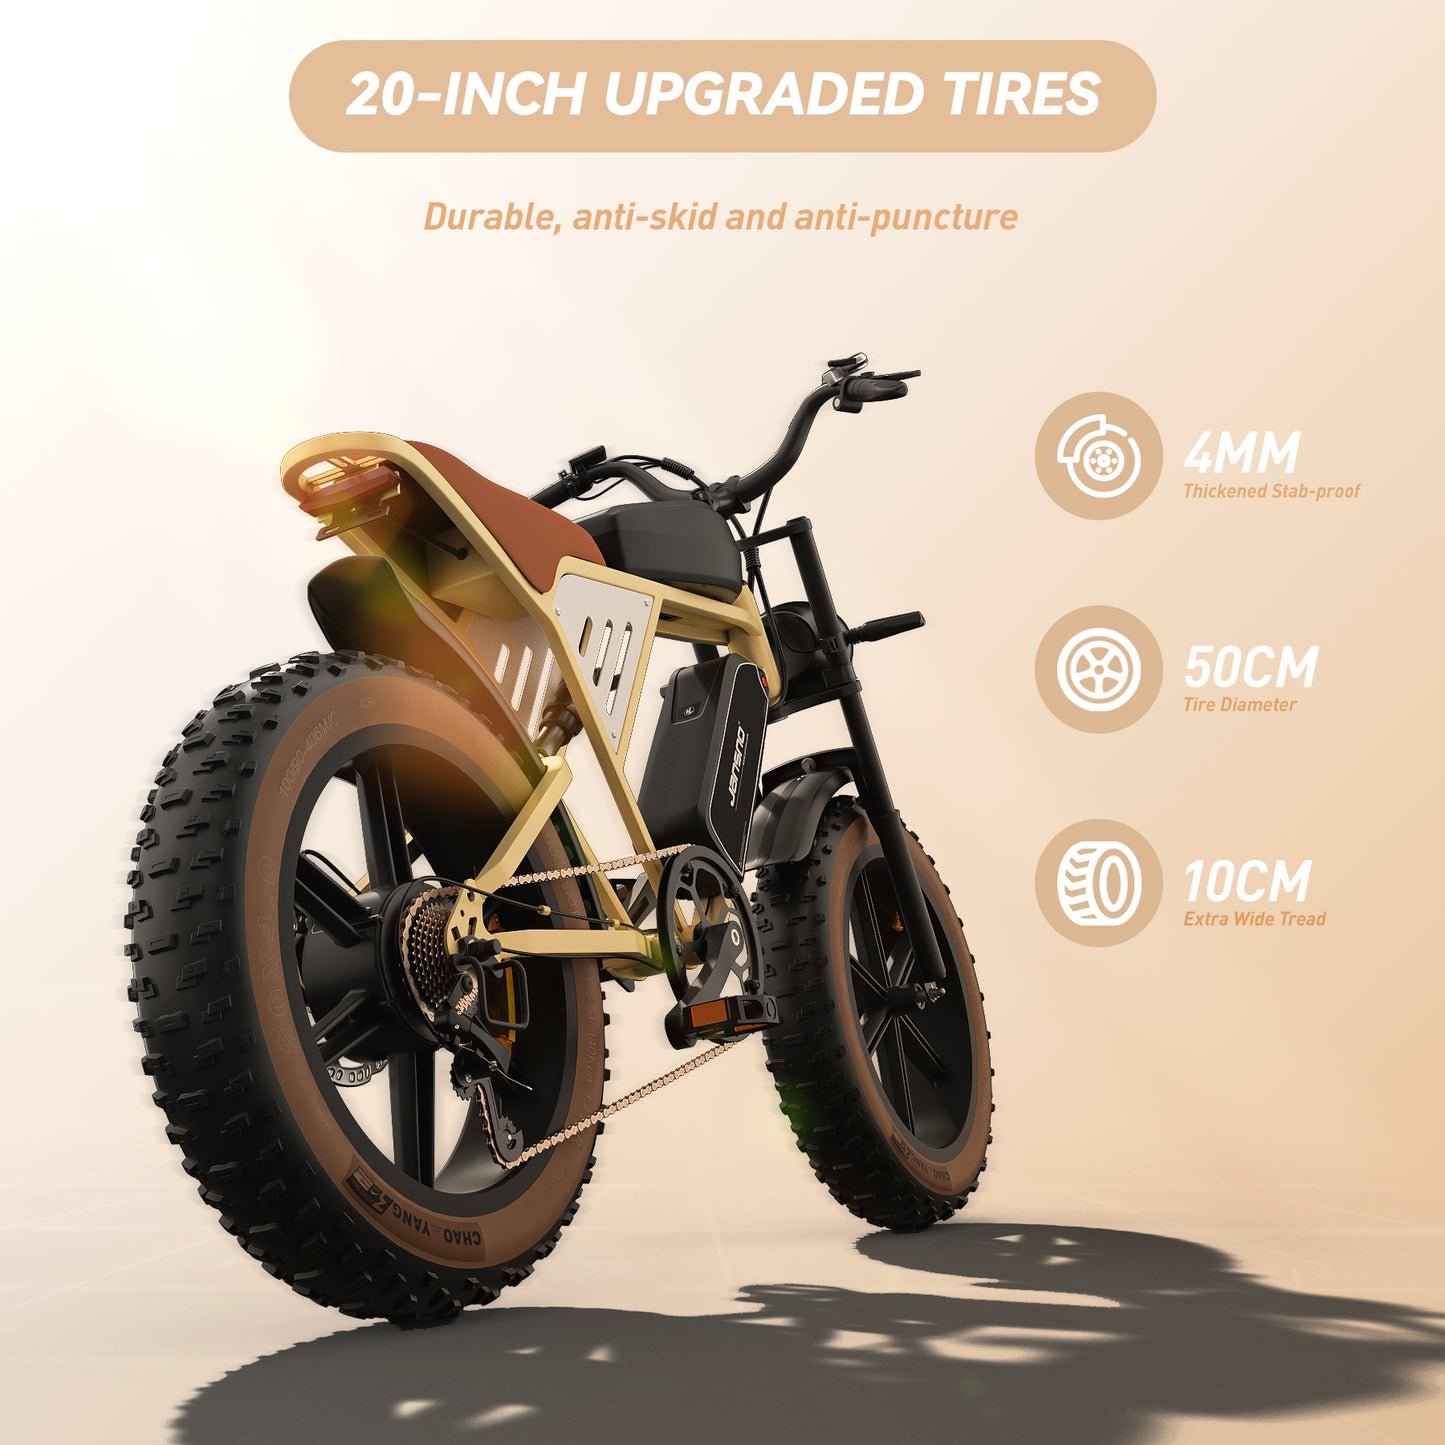 Bicicleta eléctrica JANSNO X70 Motor de 750 W 48 V 14 AH y 20 AH Baterías dobles Neumáticos gruesos 20 * 4.0 Shimano de 7 velocidades Alcance de 120 millas Bicicleta de montaña eléctrica de velocidad 26 MPH